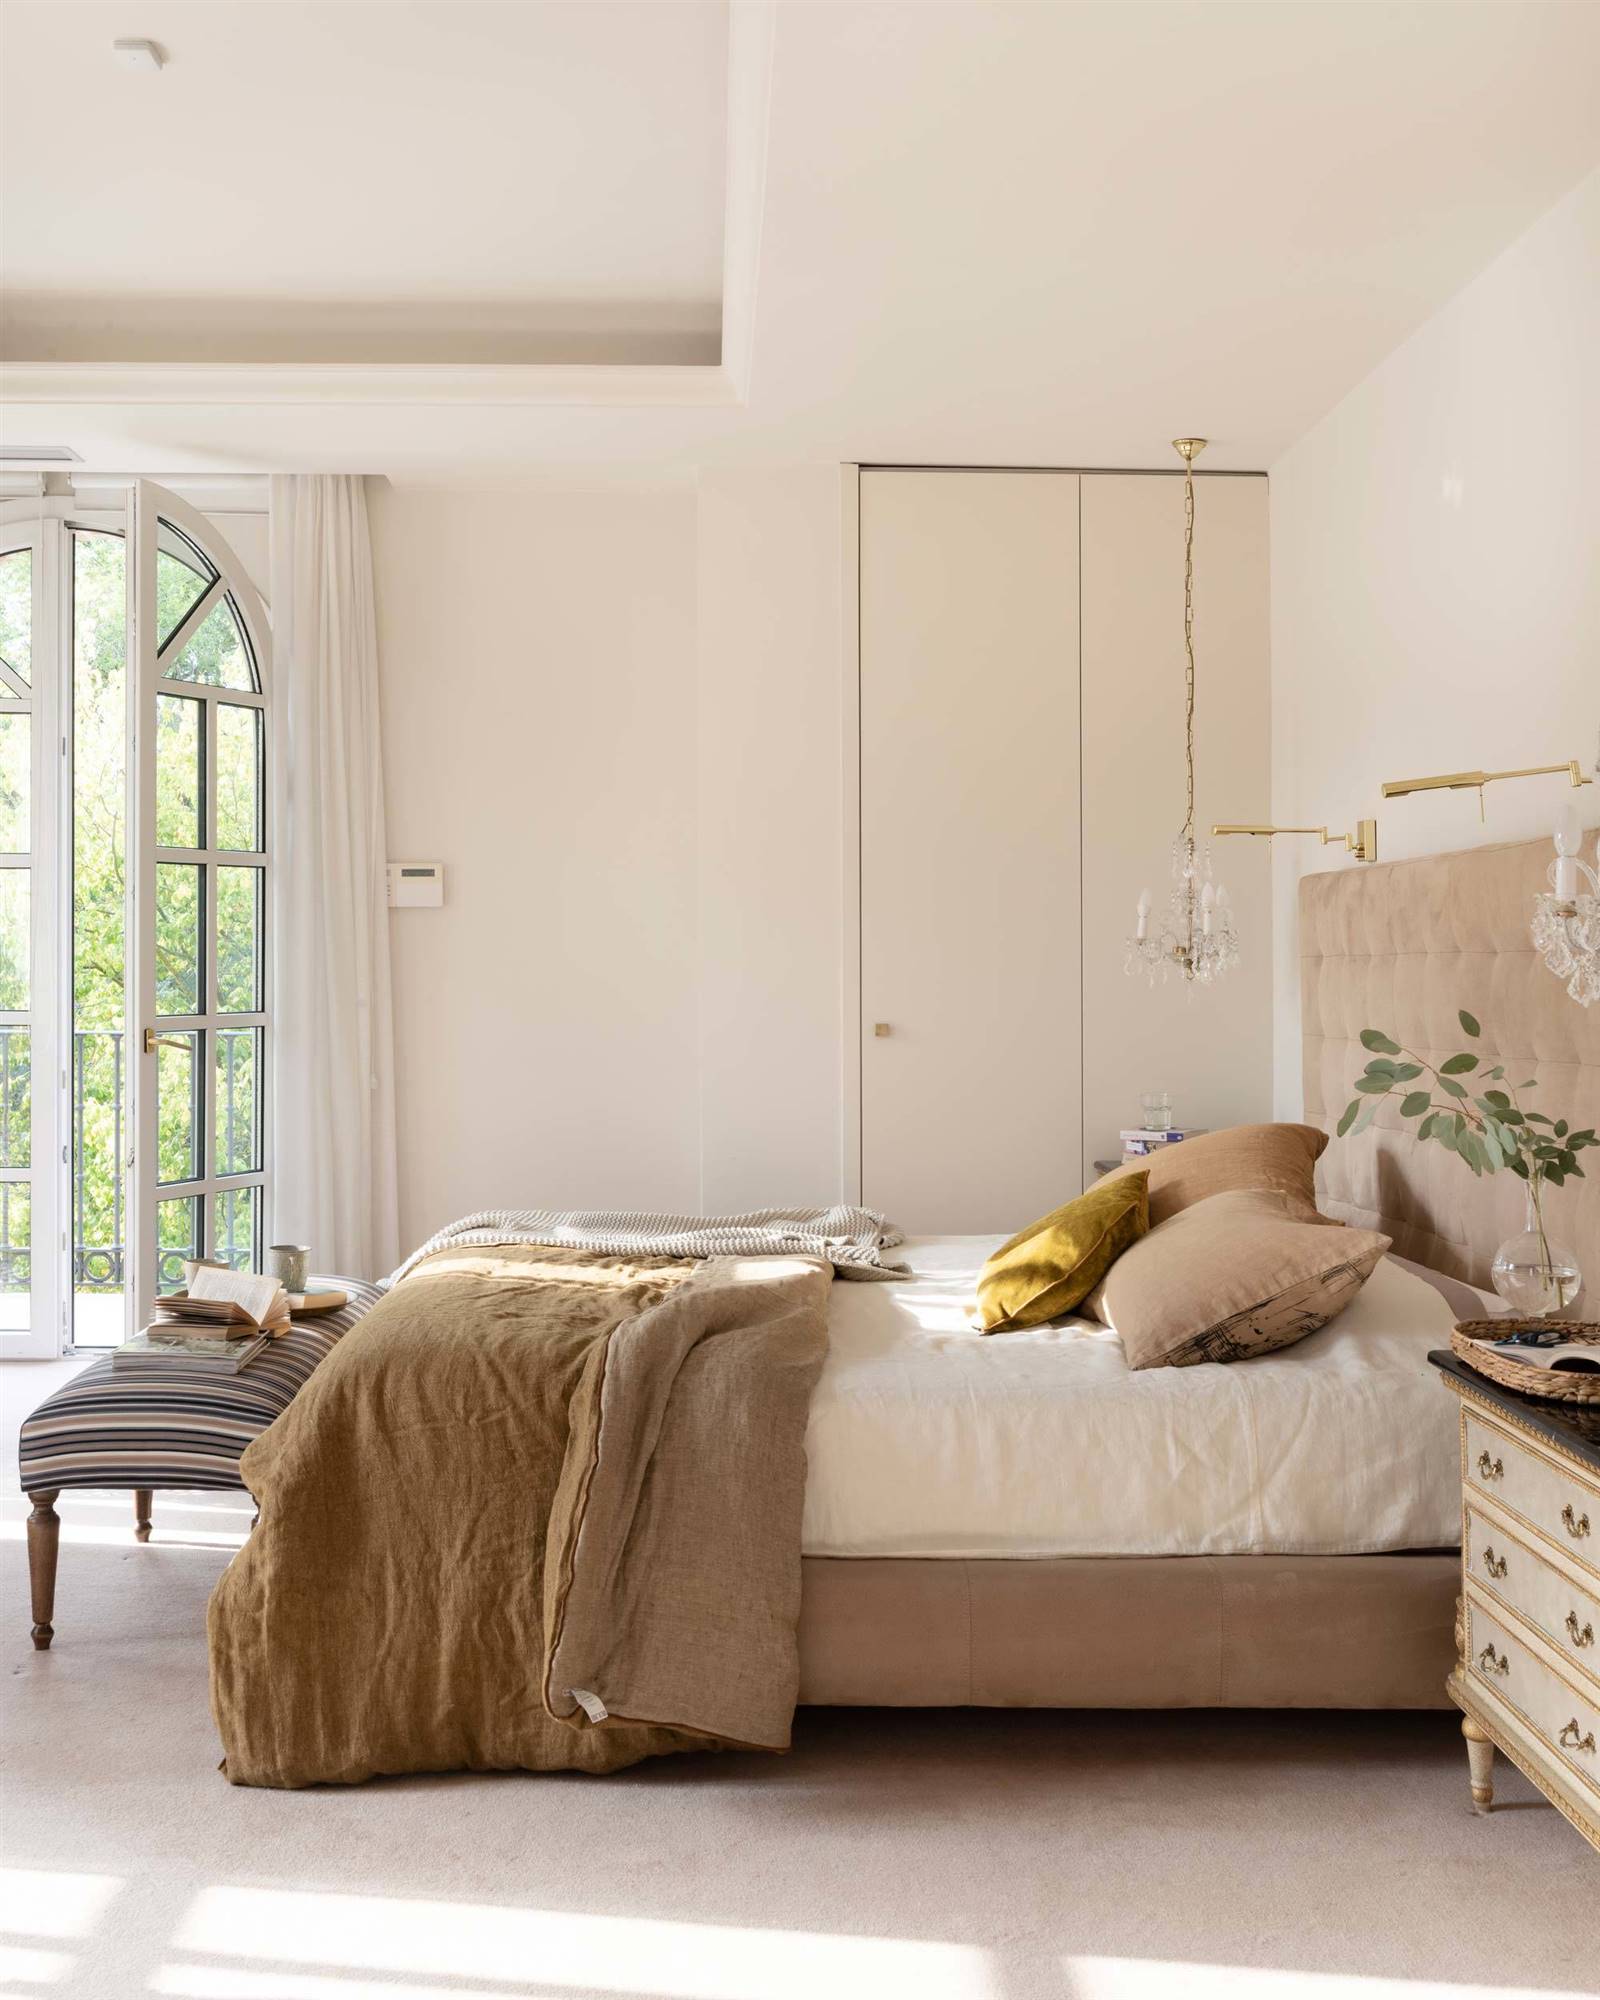 Dormitorio minimalista decorado en tonos neutros.